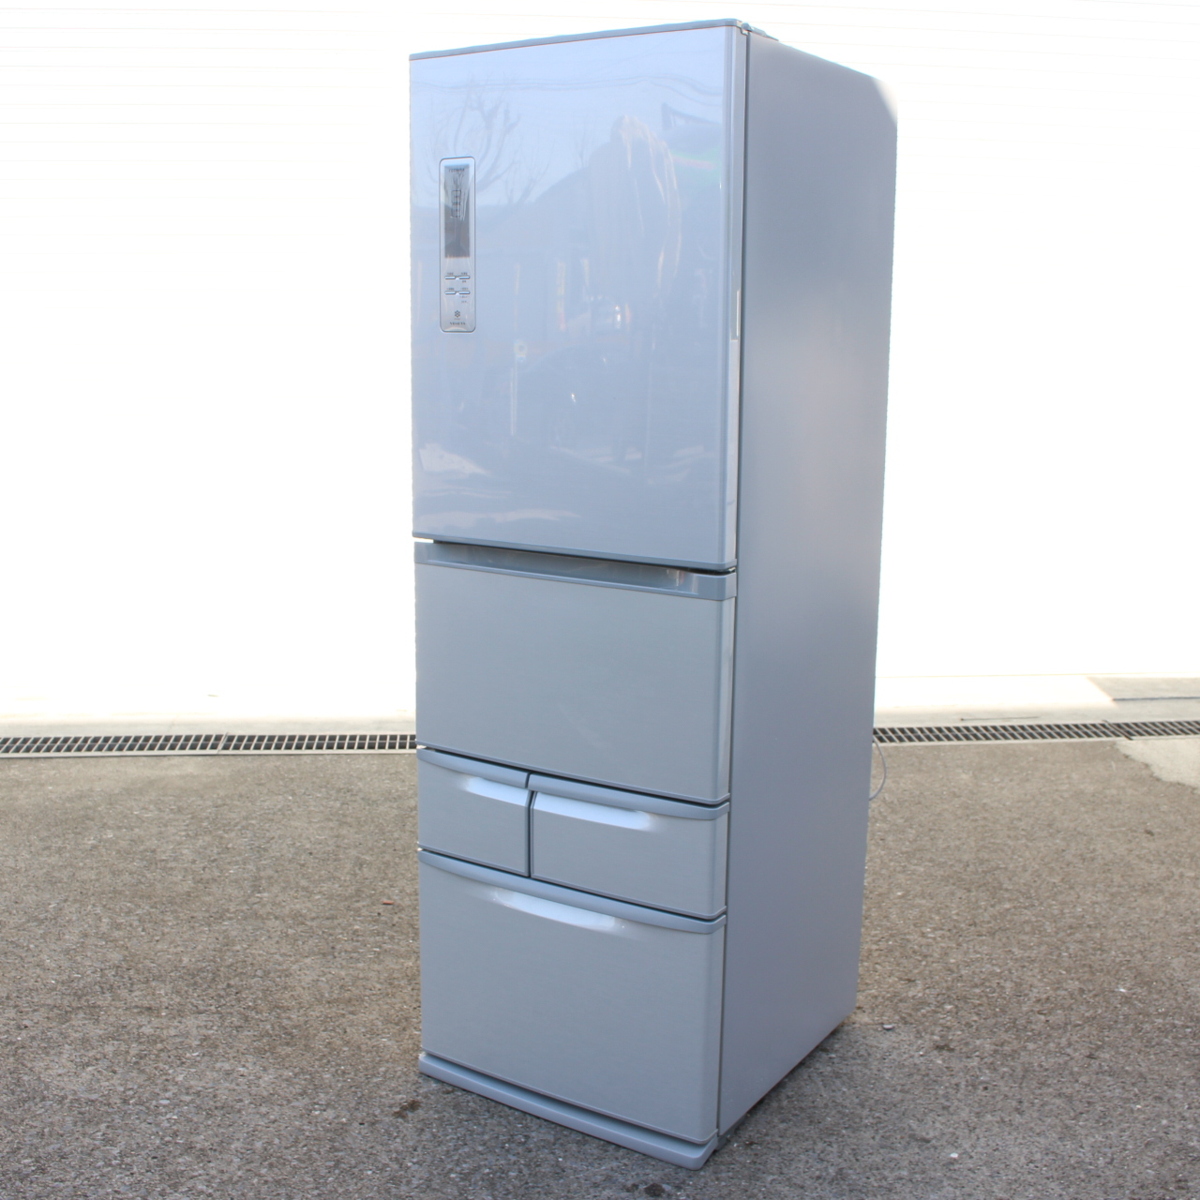 東芝 ノンフロン冷凍冷蔵庫 GR-E43G シルバー 427L 5ドア 2012年製